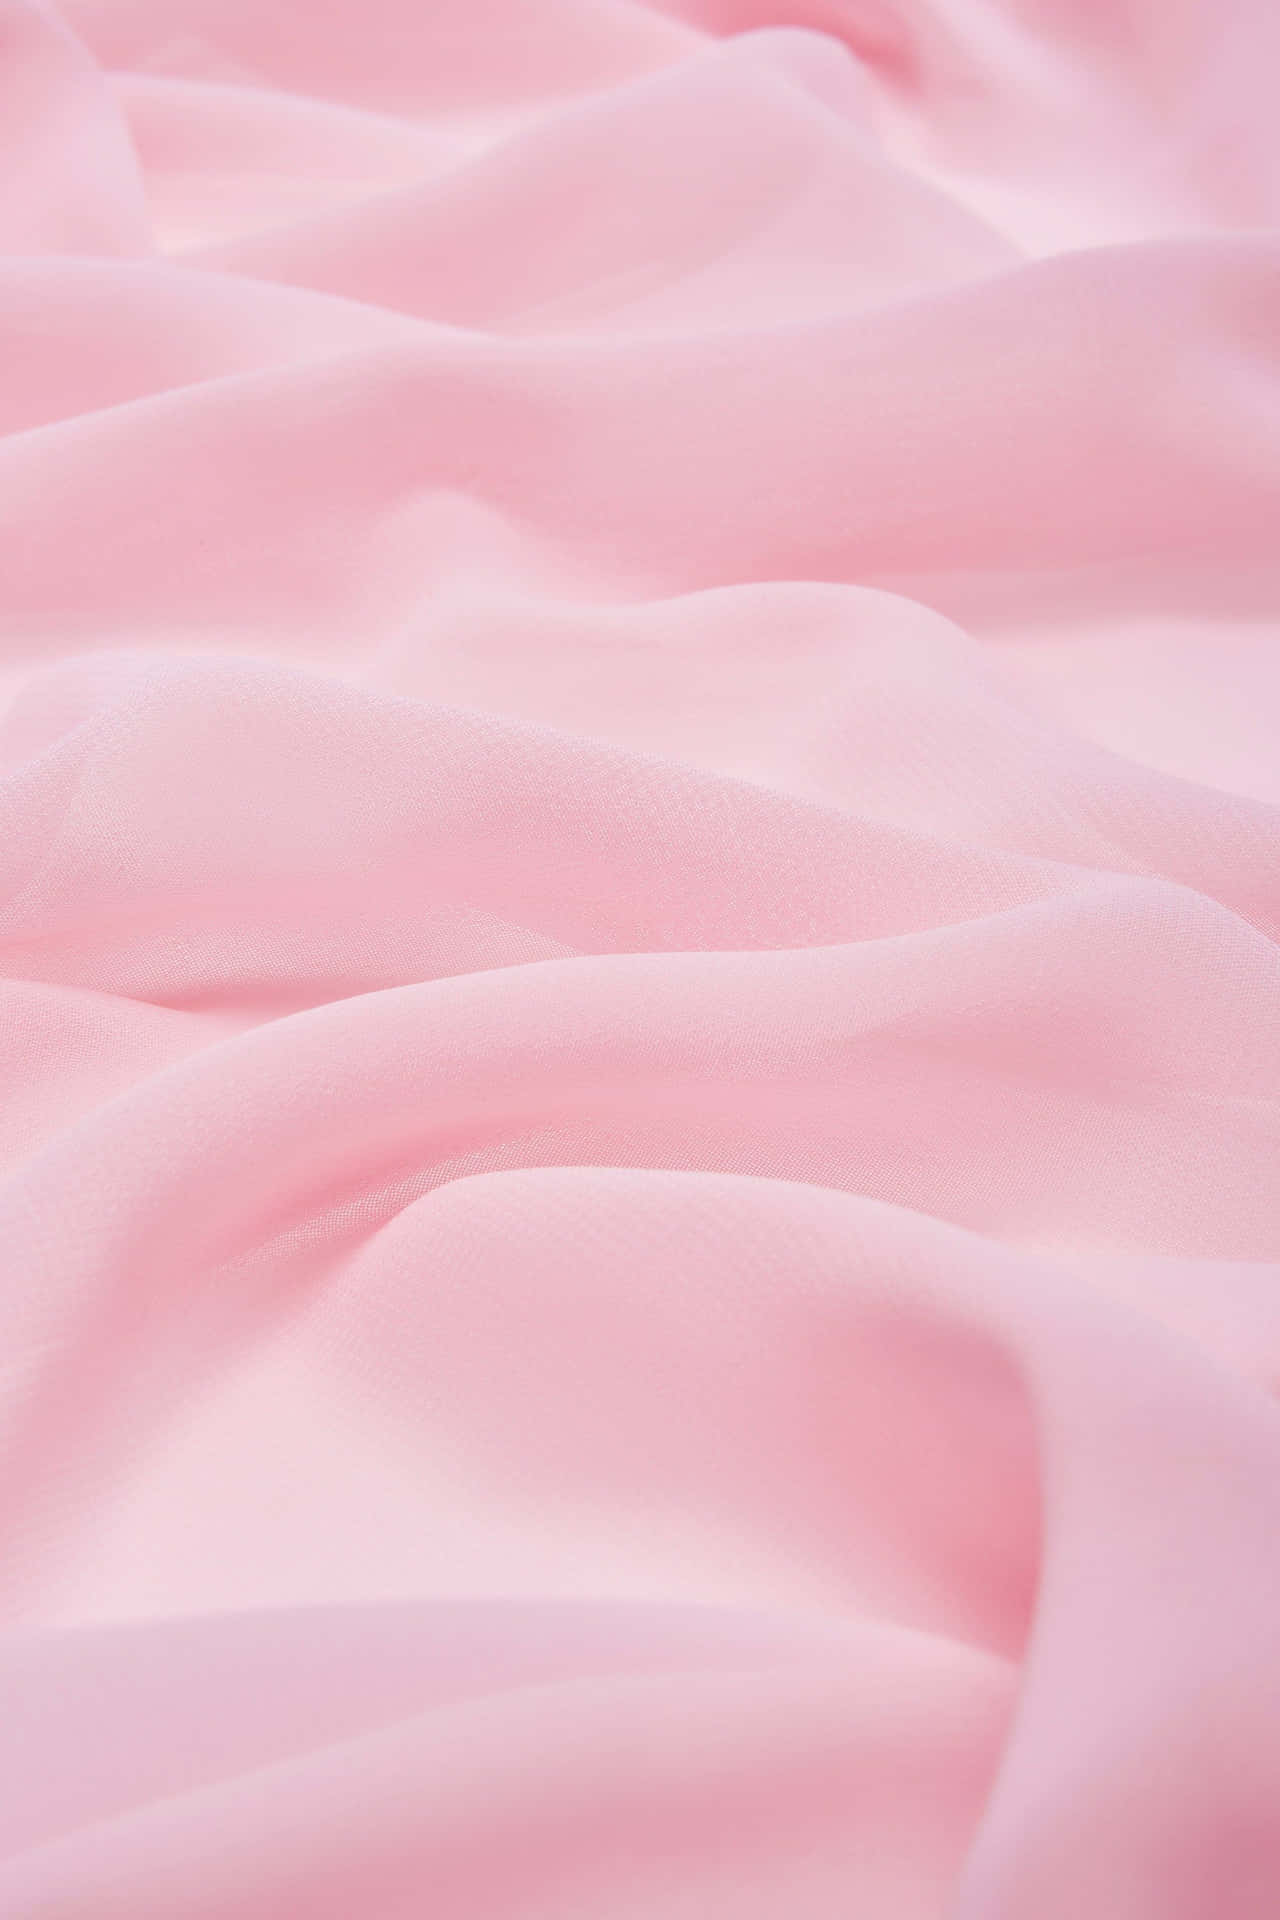 Nyd et sukkerhøjt øjeblik med lyserød Sukkerpinde! Wallpaper